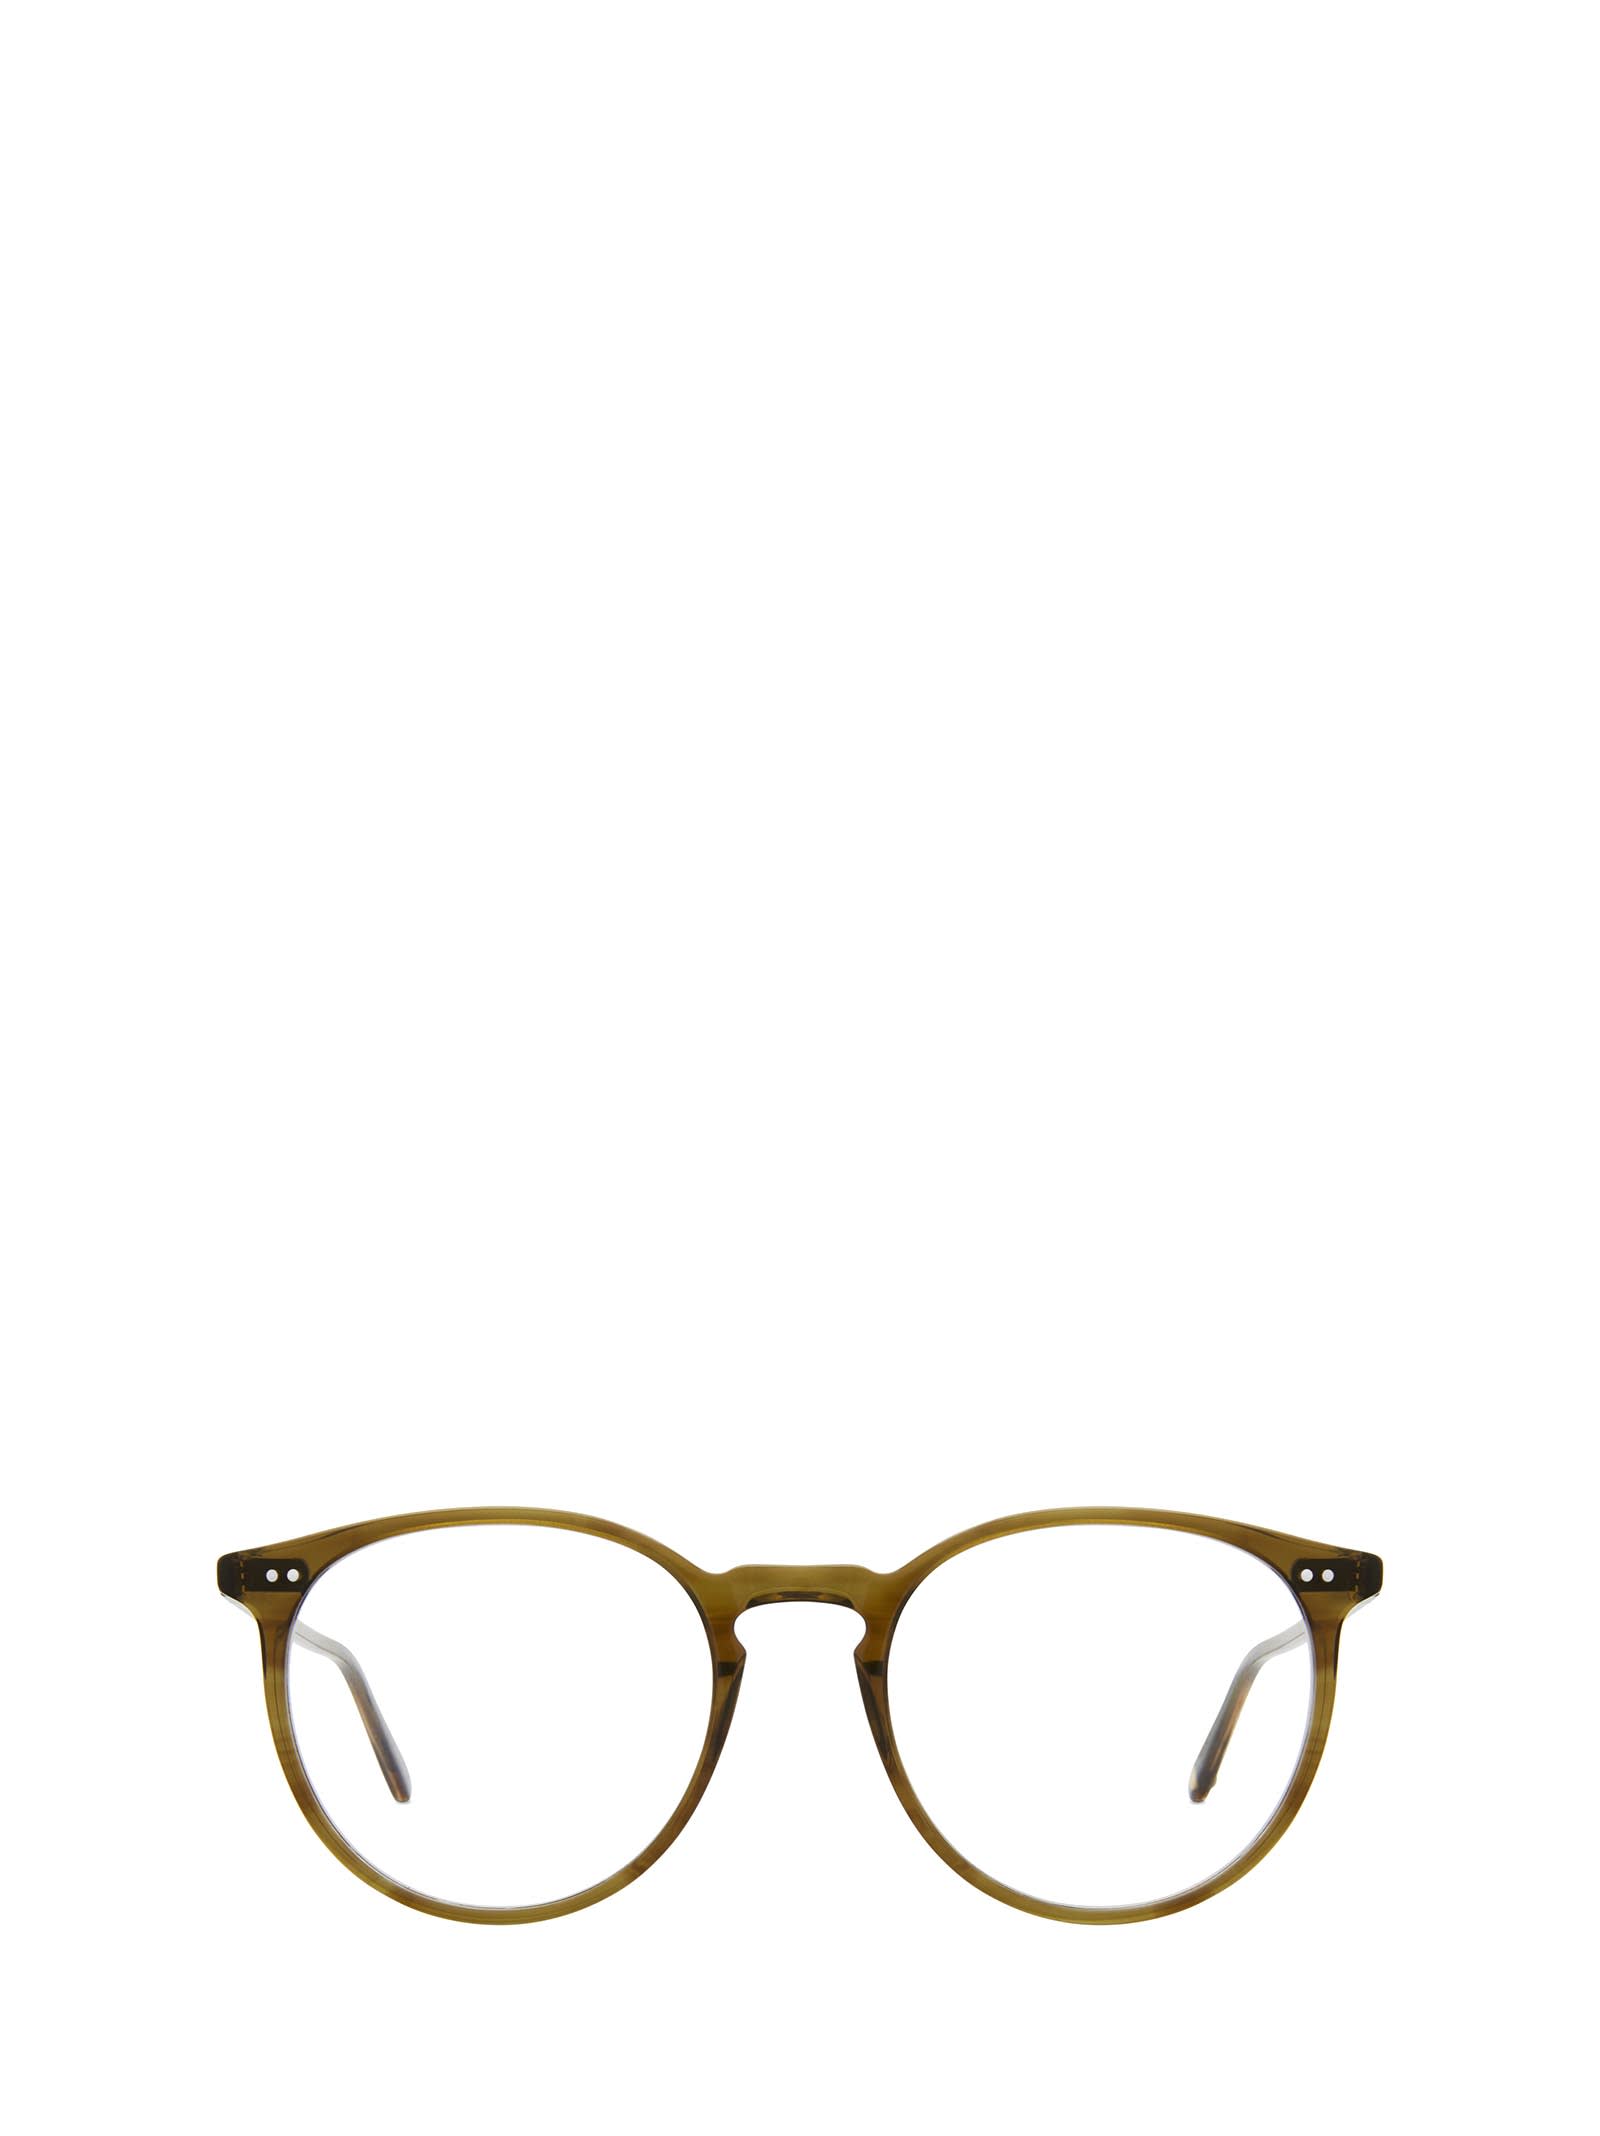 Morningside Olive Tortoise Glasses